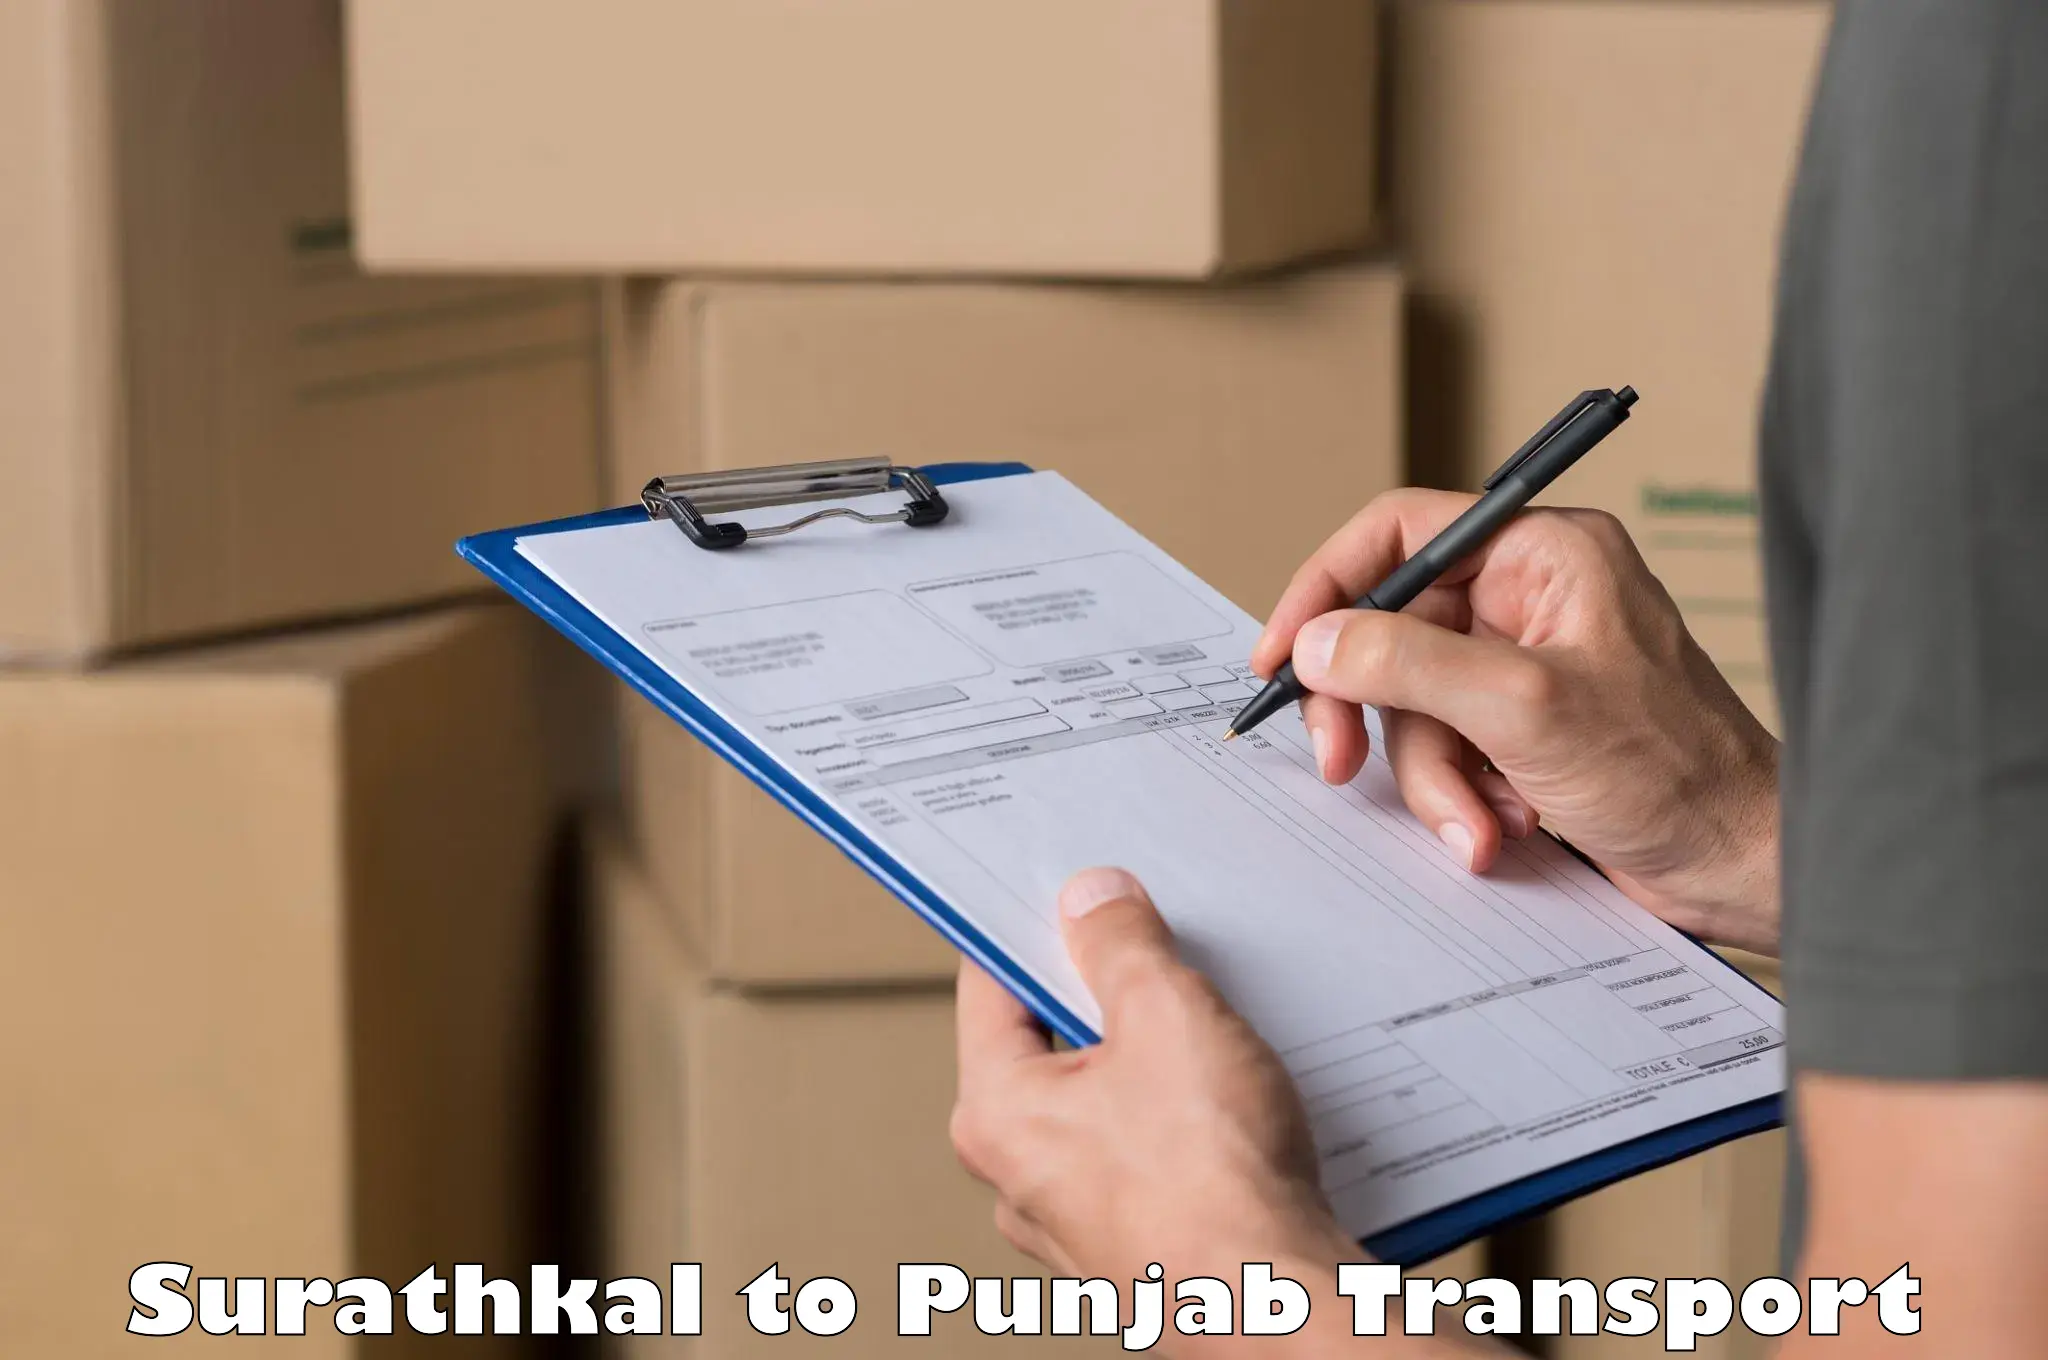 International cargo transportation services Surathkal to Amritsar